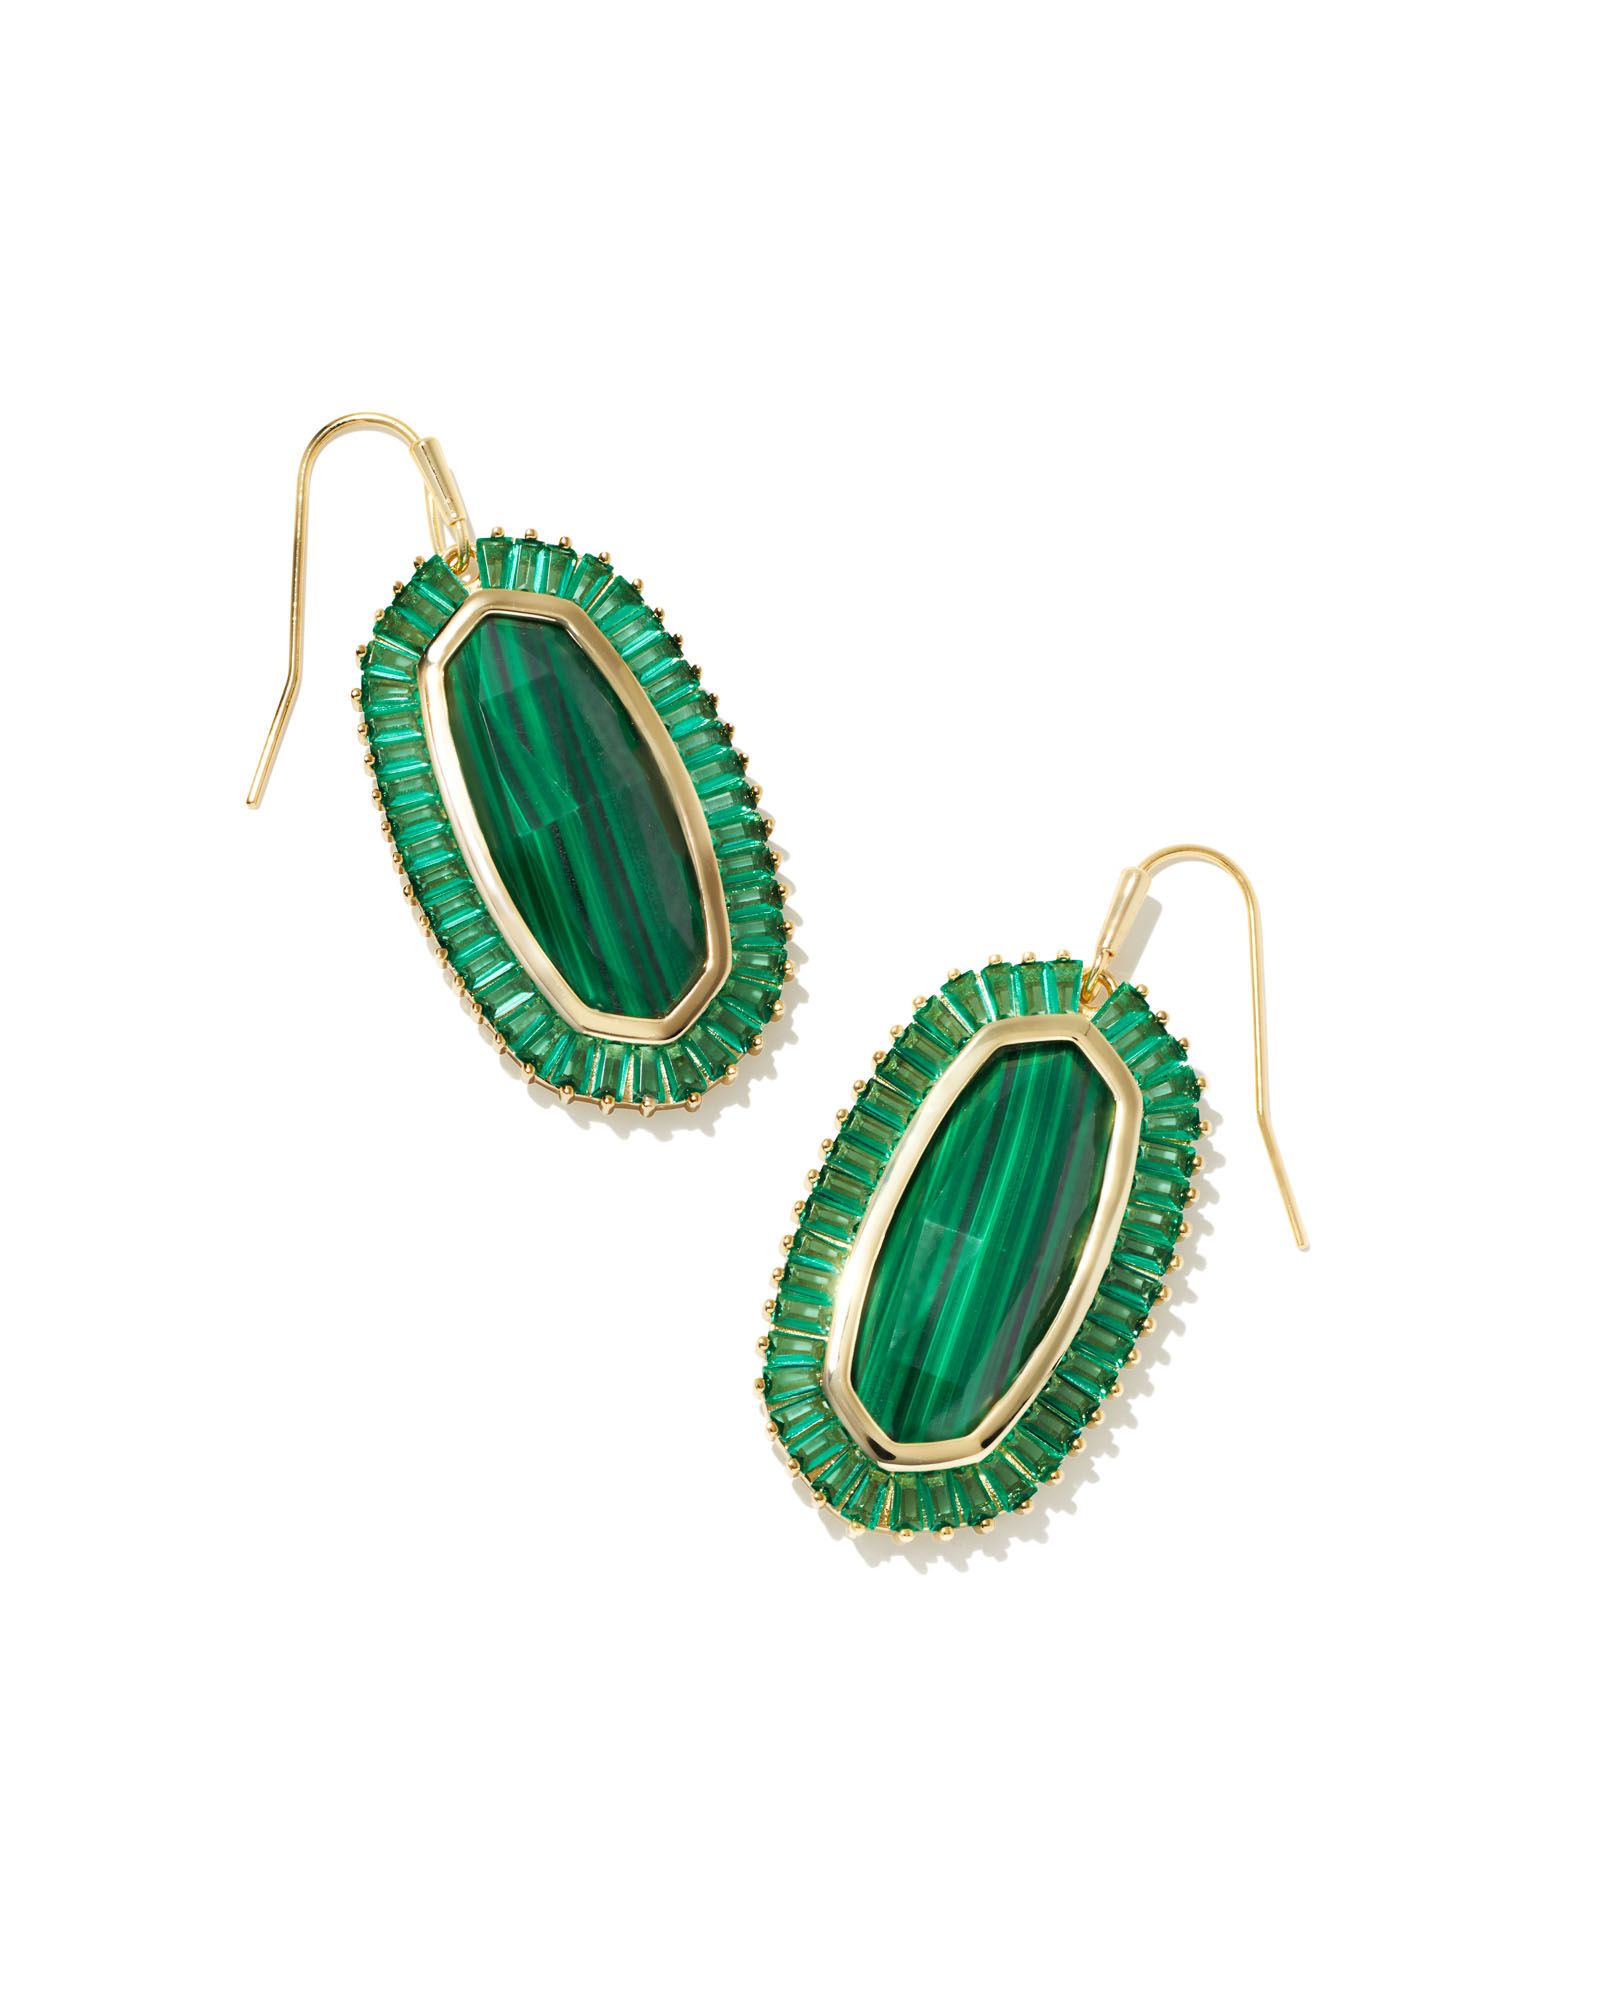 Baguette Elle Gold Drop Earrings in Emerald Mix | Kendra Scott | Kendra Scott